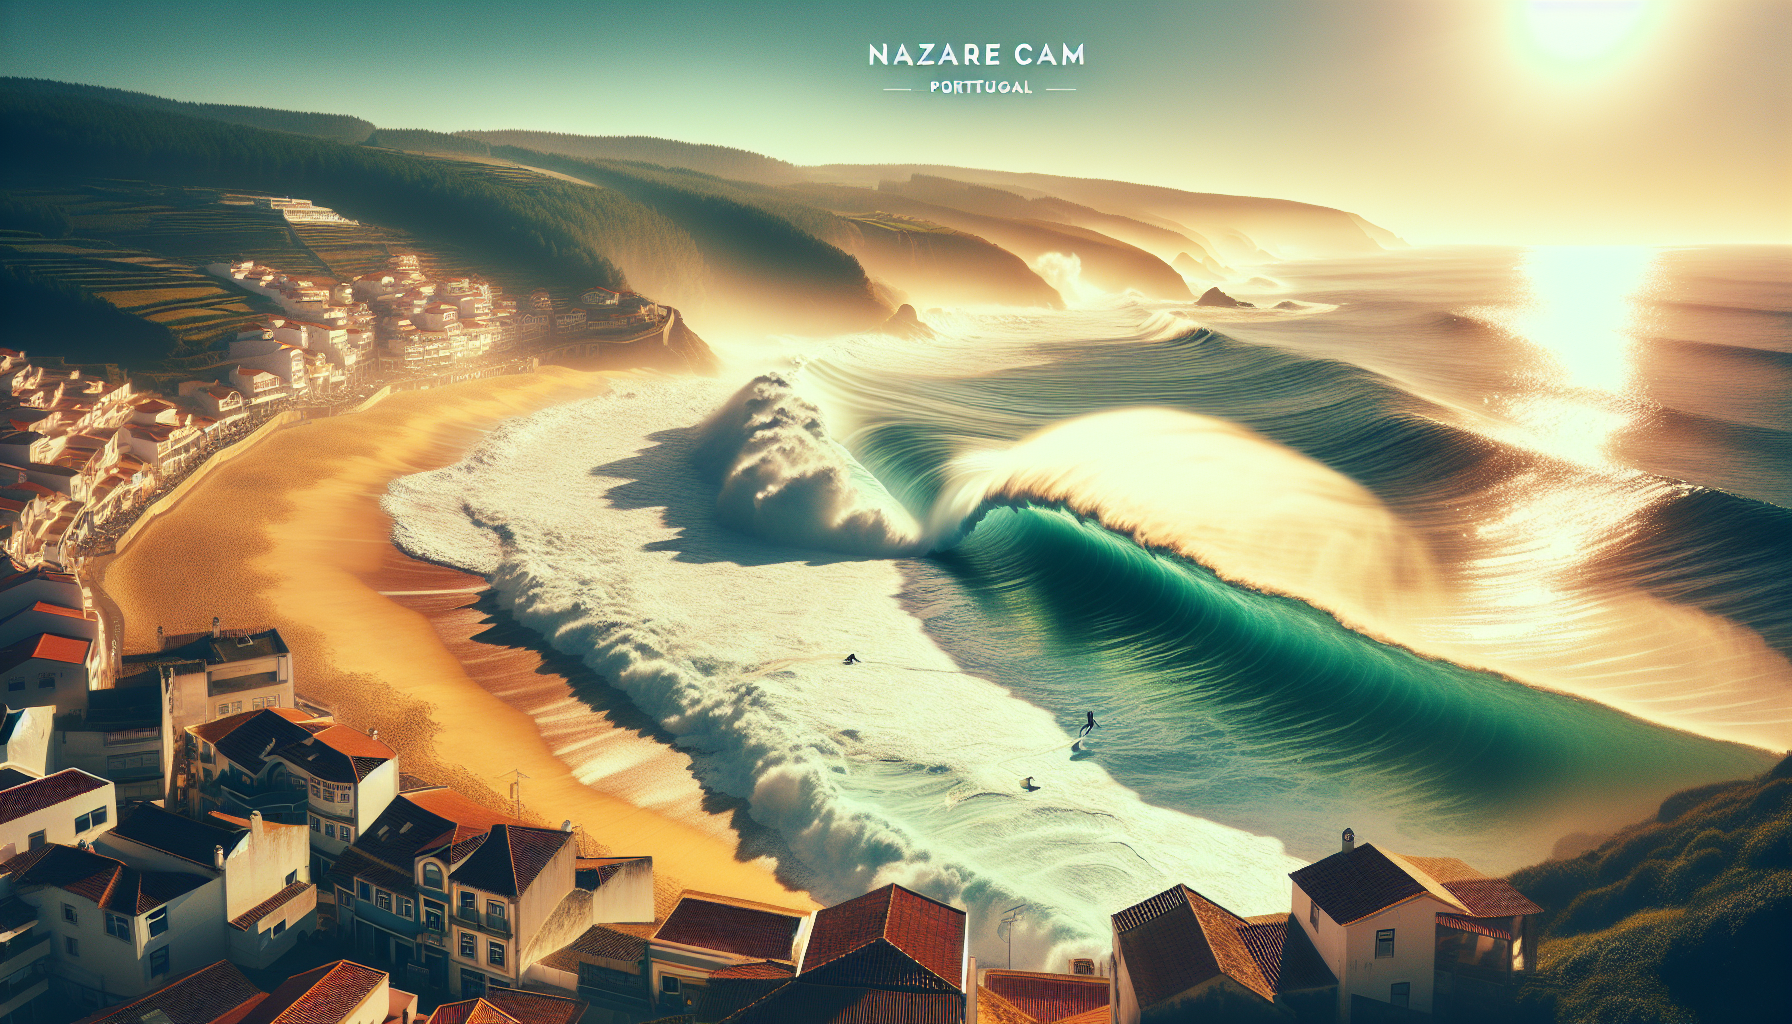 Transmissão ao Vivo da Nazaré: Descubra as Melhores Câmaras da Nazaré Cam para Surfistas